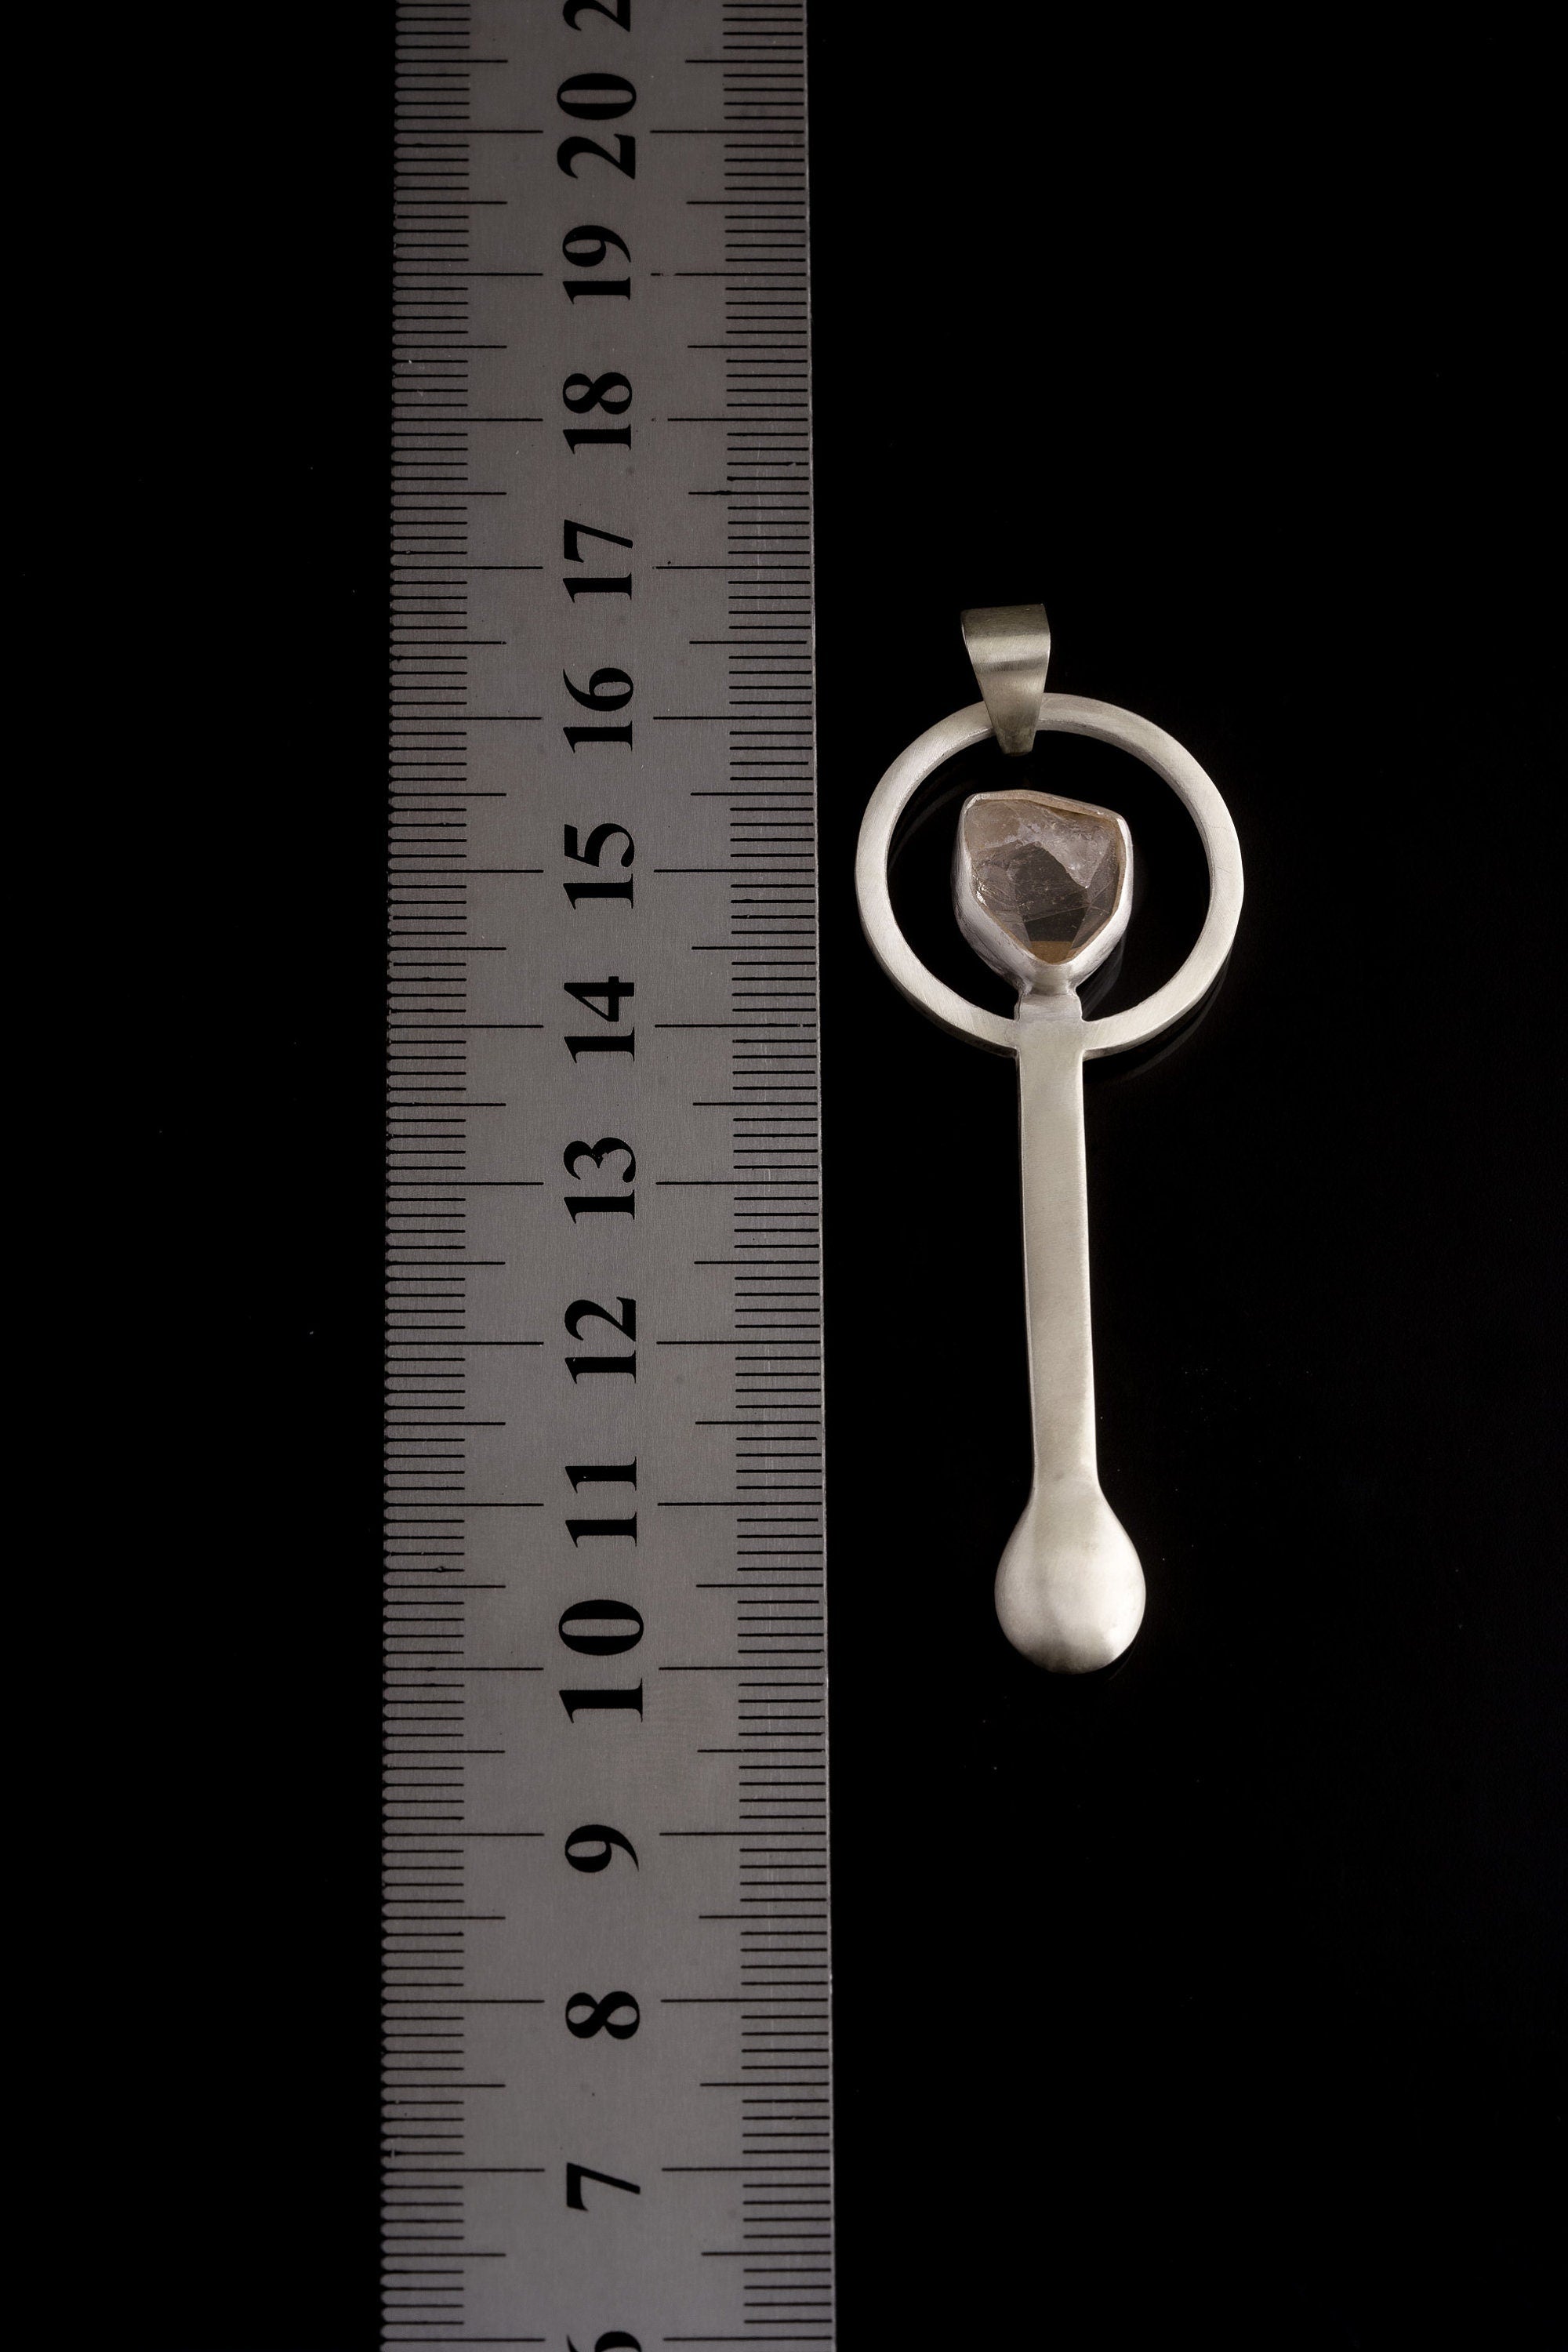 Bezel Set Himalayan Quartz Point - Spice / Ceremonial Spoon - 925 Cast Silver - Unique Hammer Textured - Crystal Pendant Necklace -